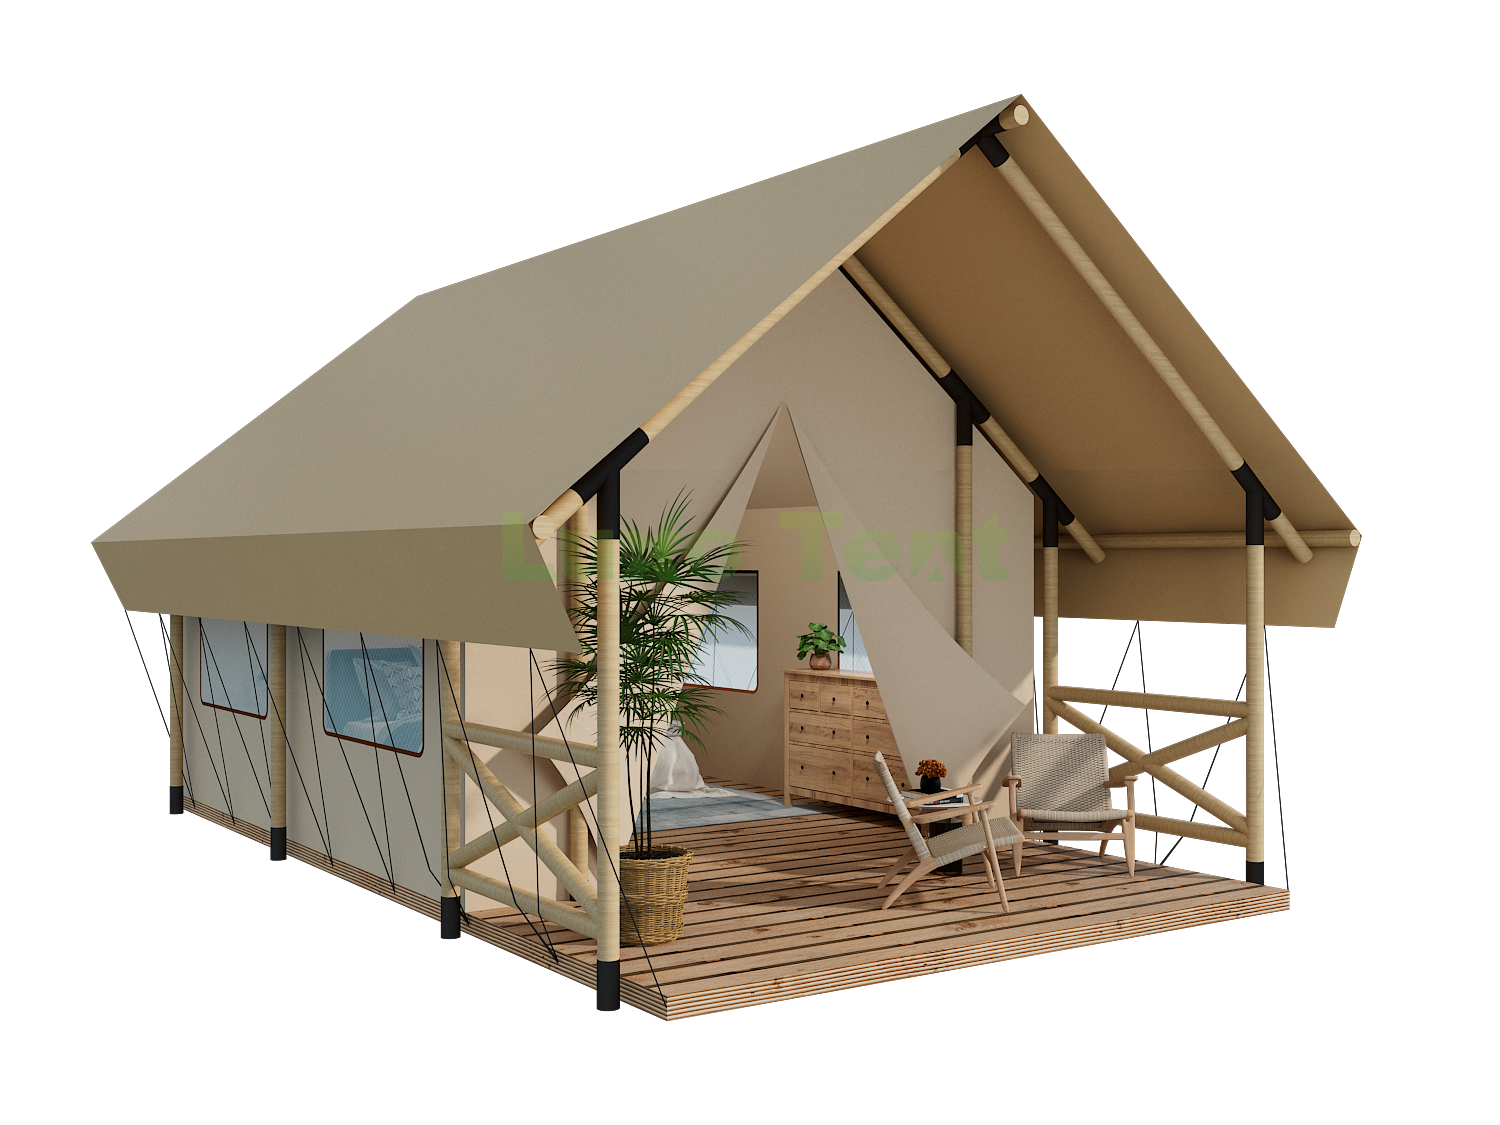 Lona de marco de madeira que vive unha cómoda casa de tenda de safari para o resort